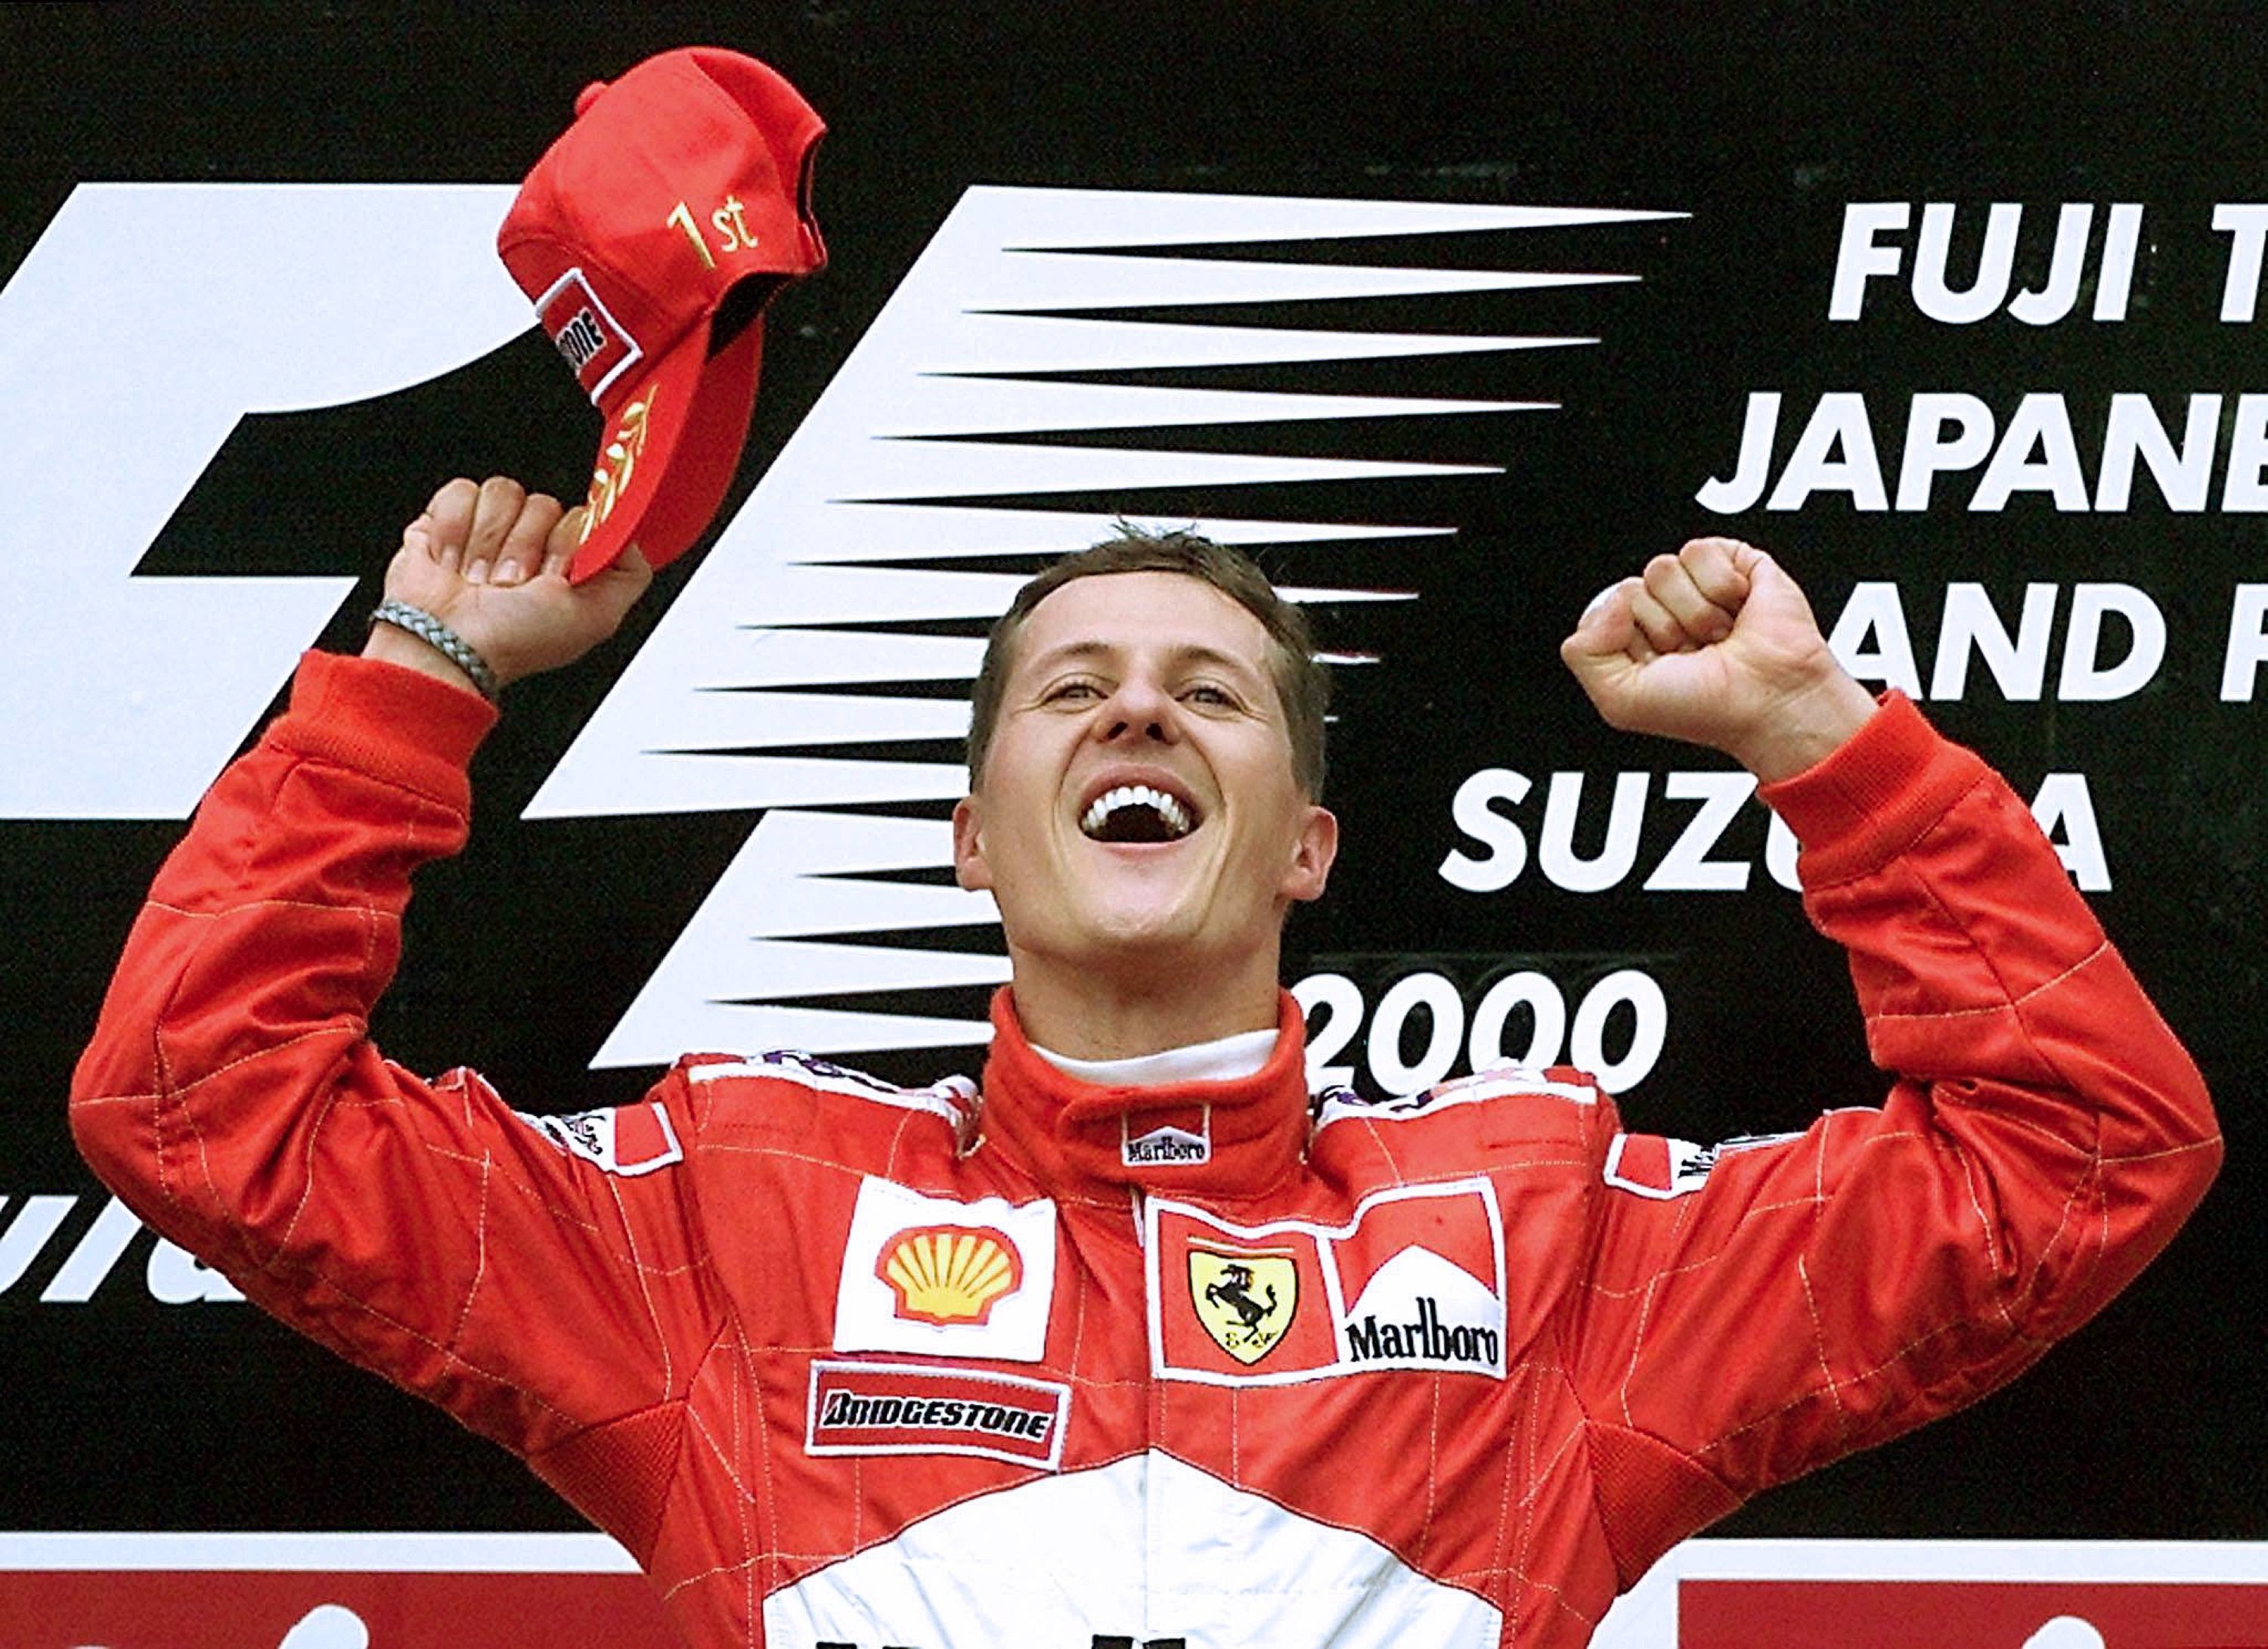 Michael Schumacher, demoledor, secuelas irreversibles después del accidente, no puede comunicarse